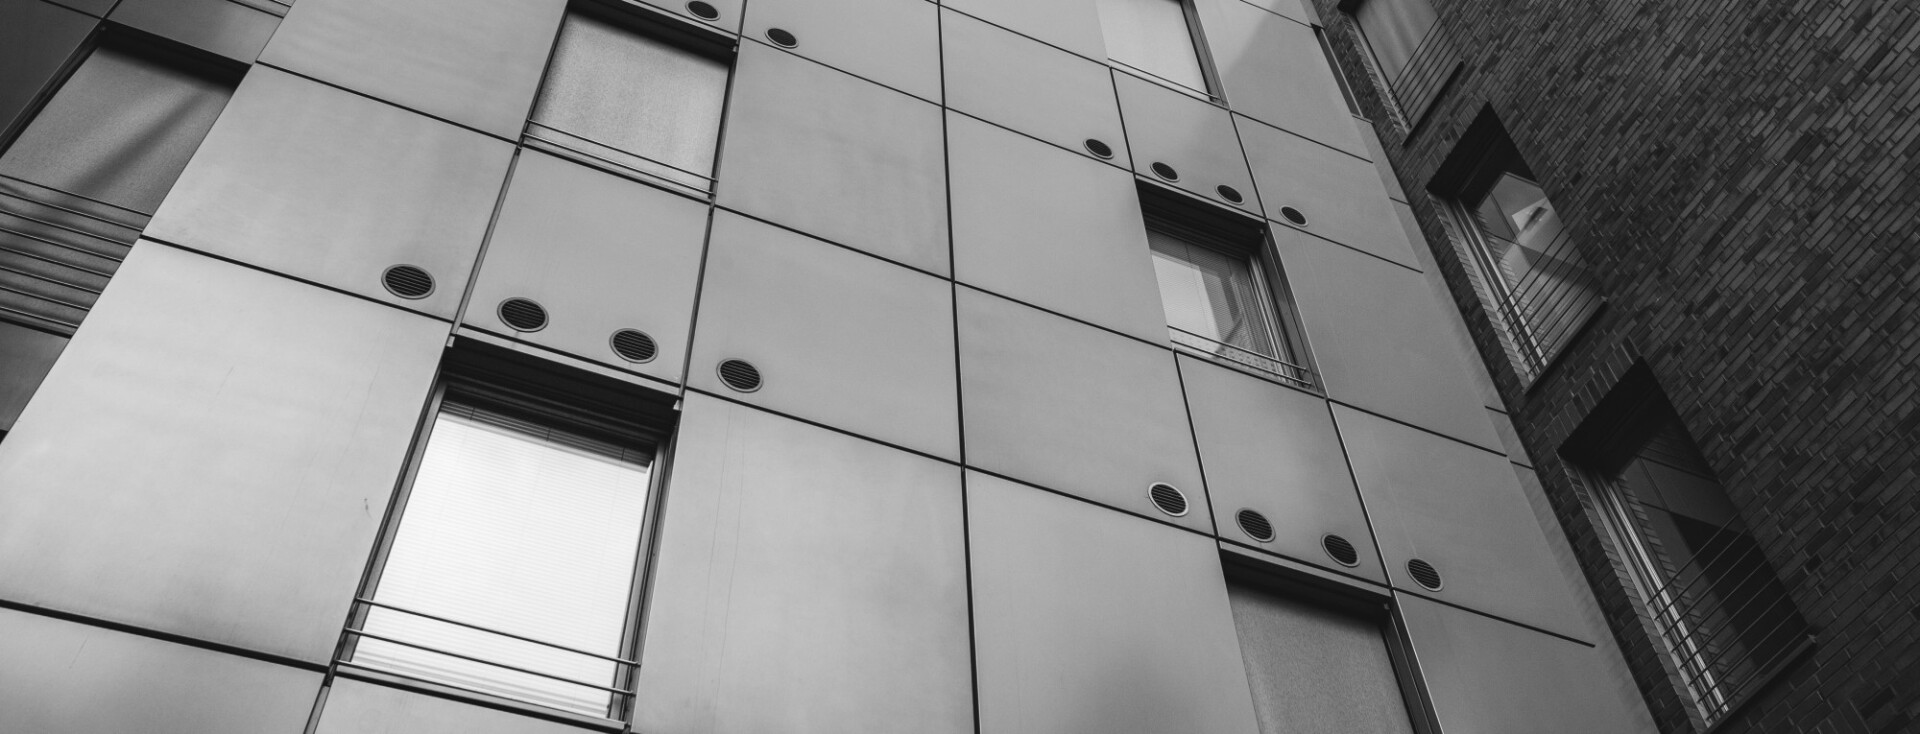 Modern architecture windows